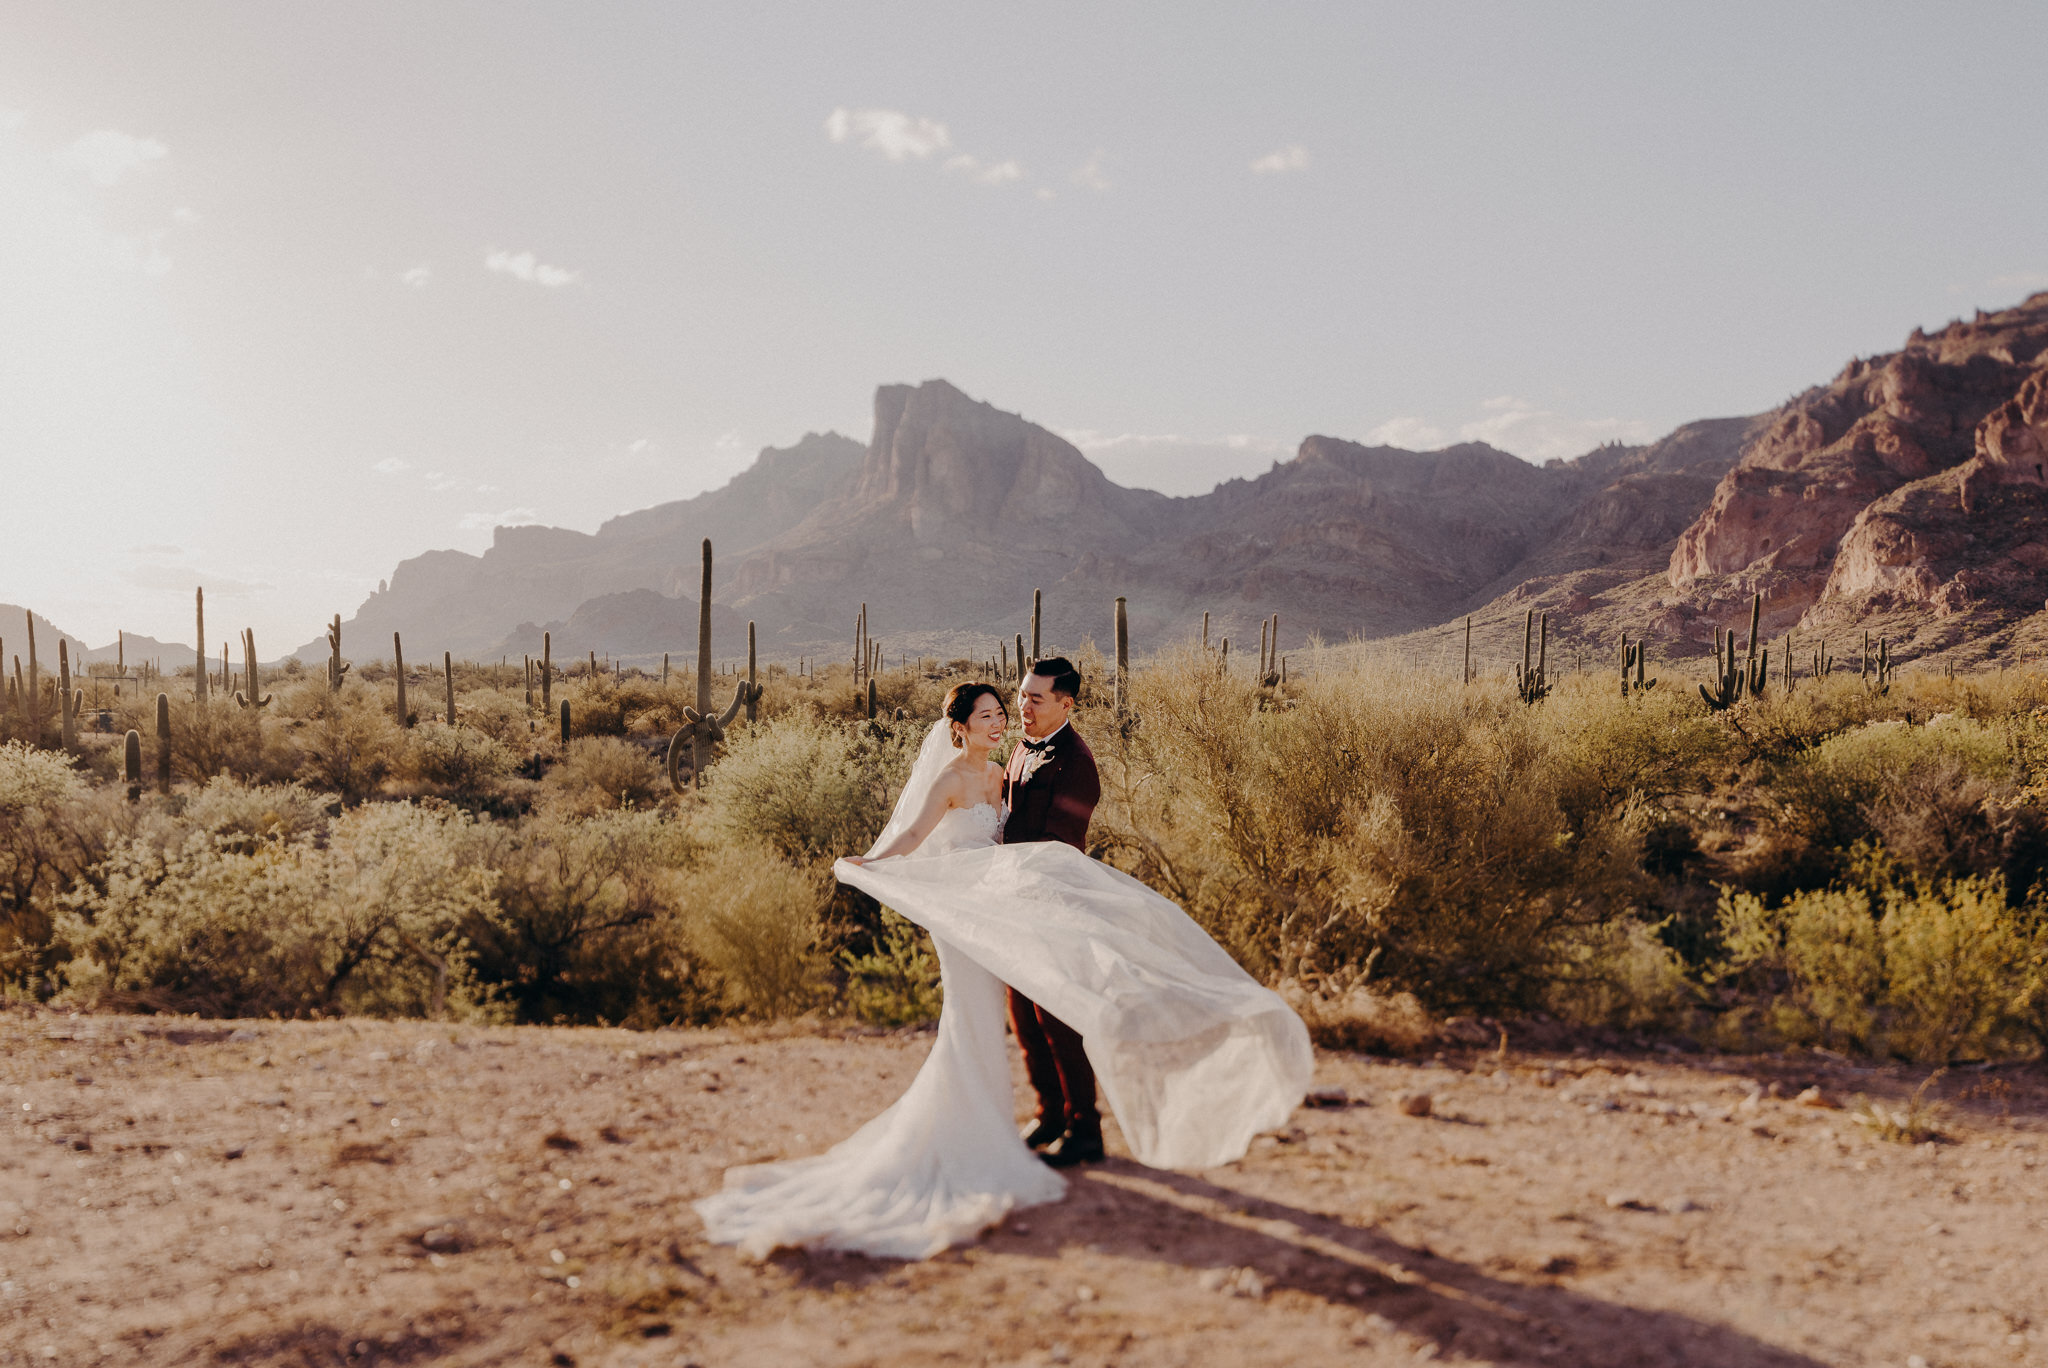 california wedding photograhers - desert elopement - supersition mountains - isaiahandtaylor.com-87.jpg